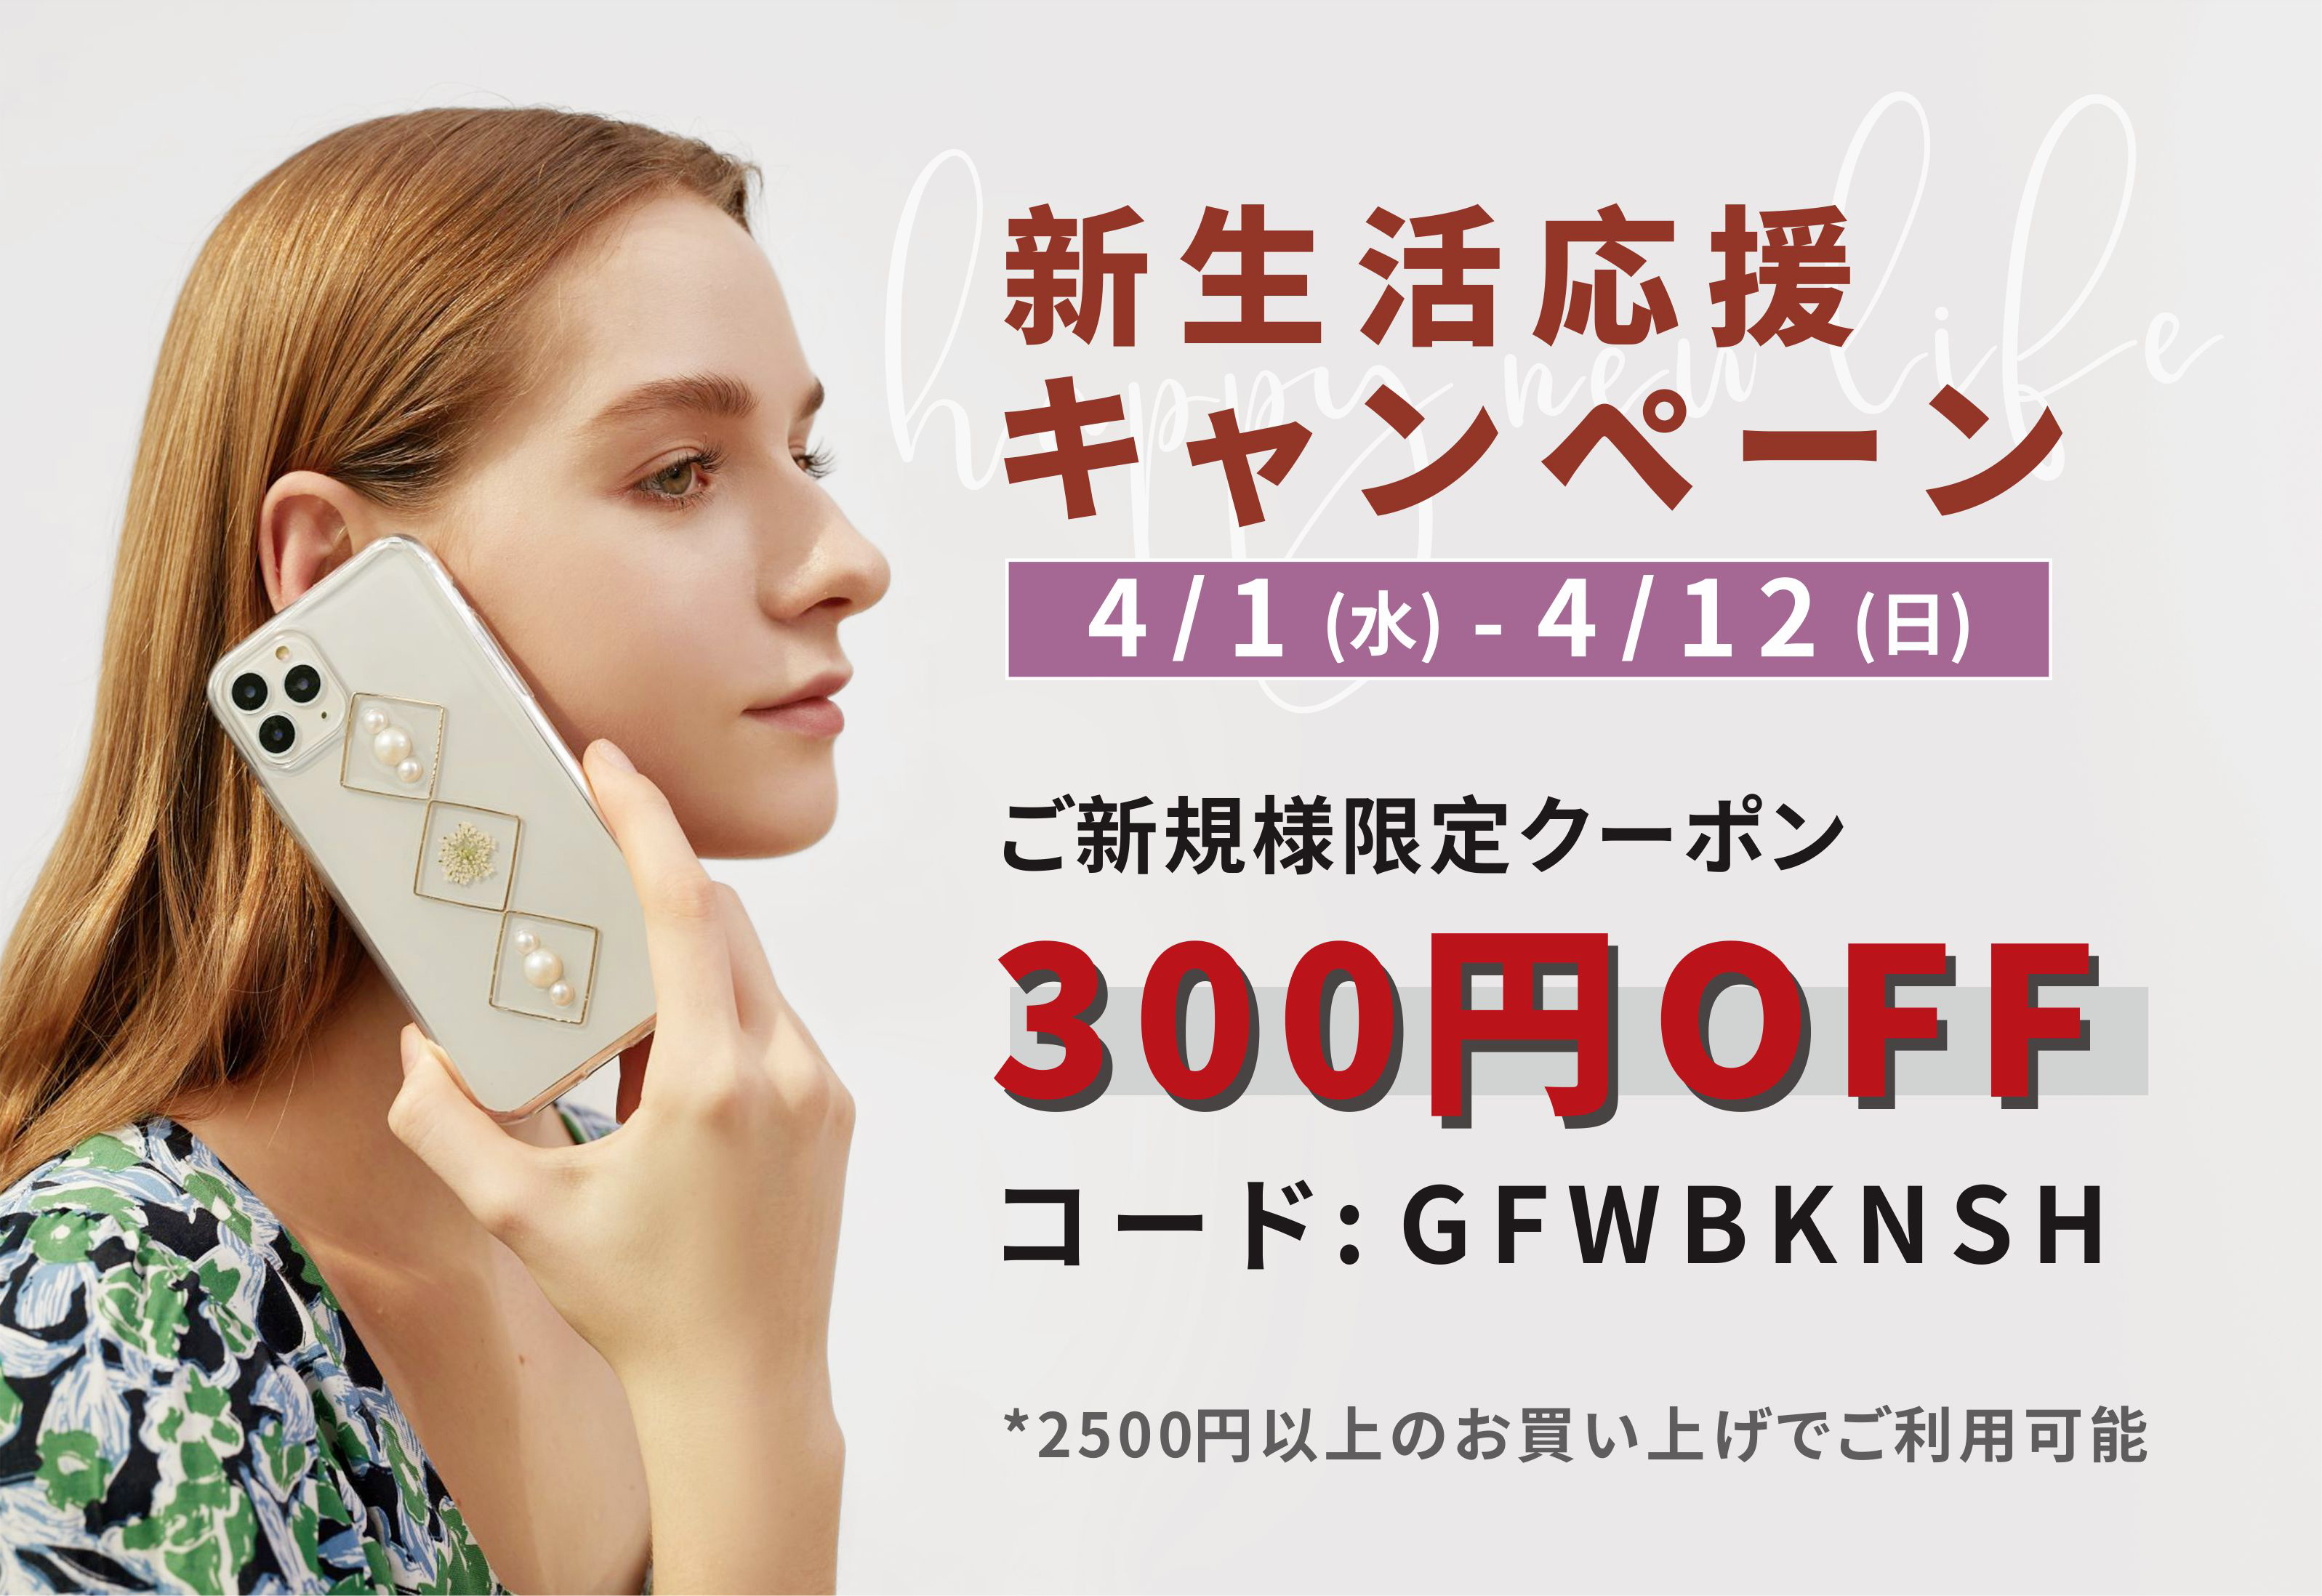 新しいものが欲しくなる春 ご新規様限定の300円offクーポンをプレゼント Base Mag